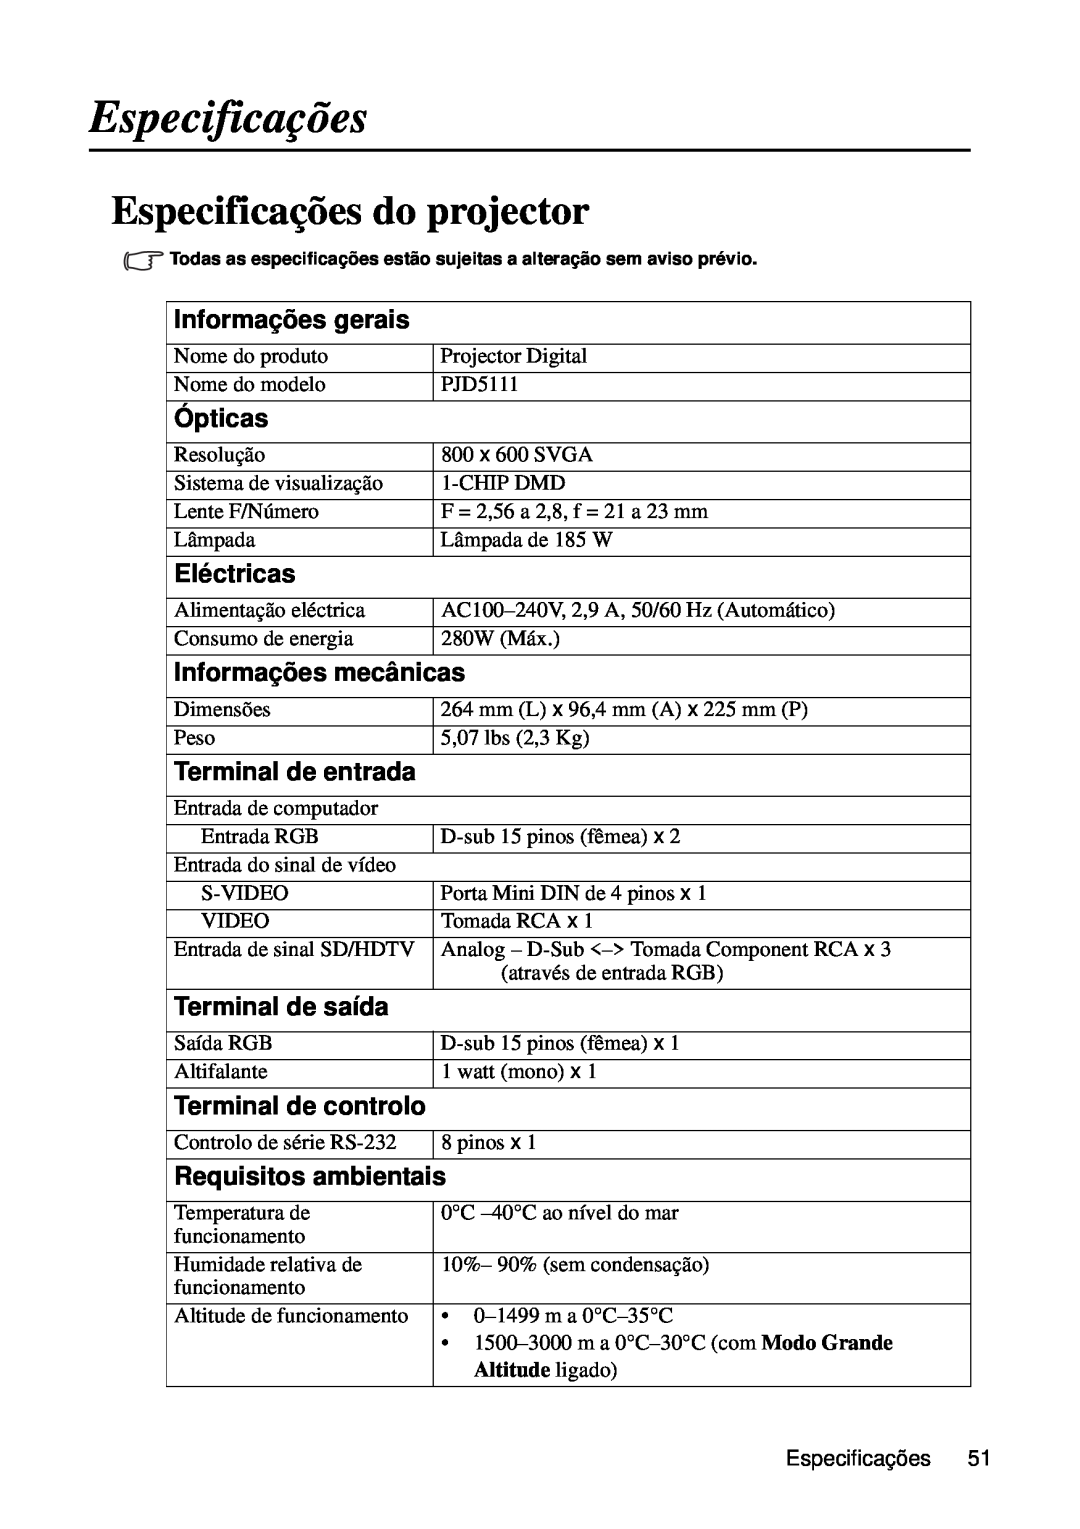 ViewSonic VS12440 manual Especificações do projector, Altitude ligado 